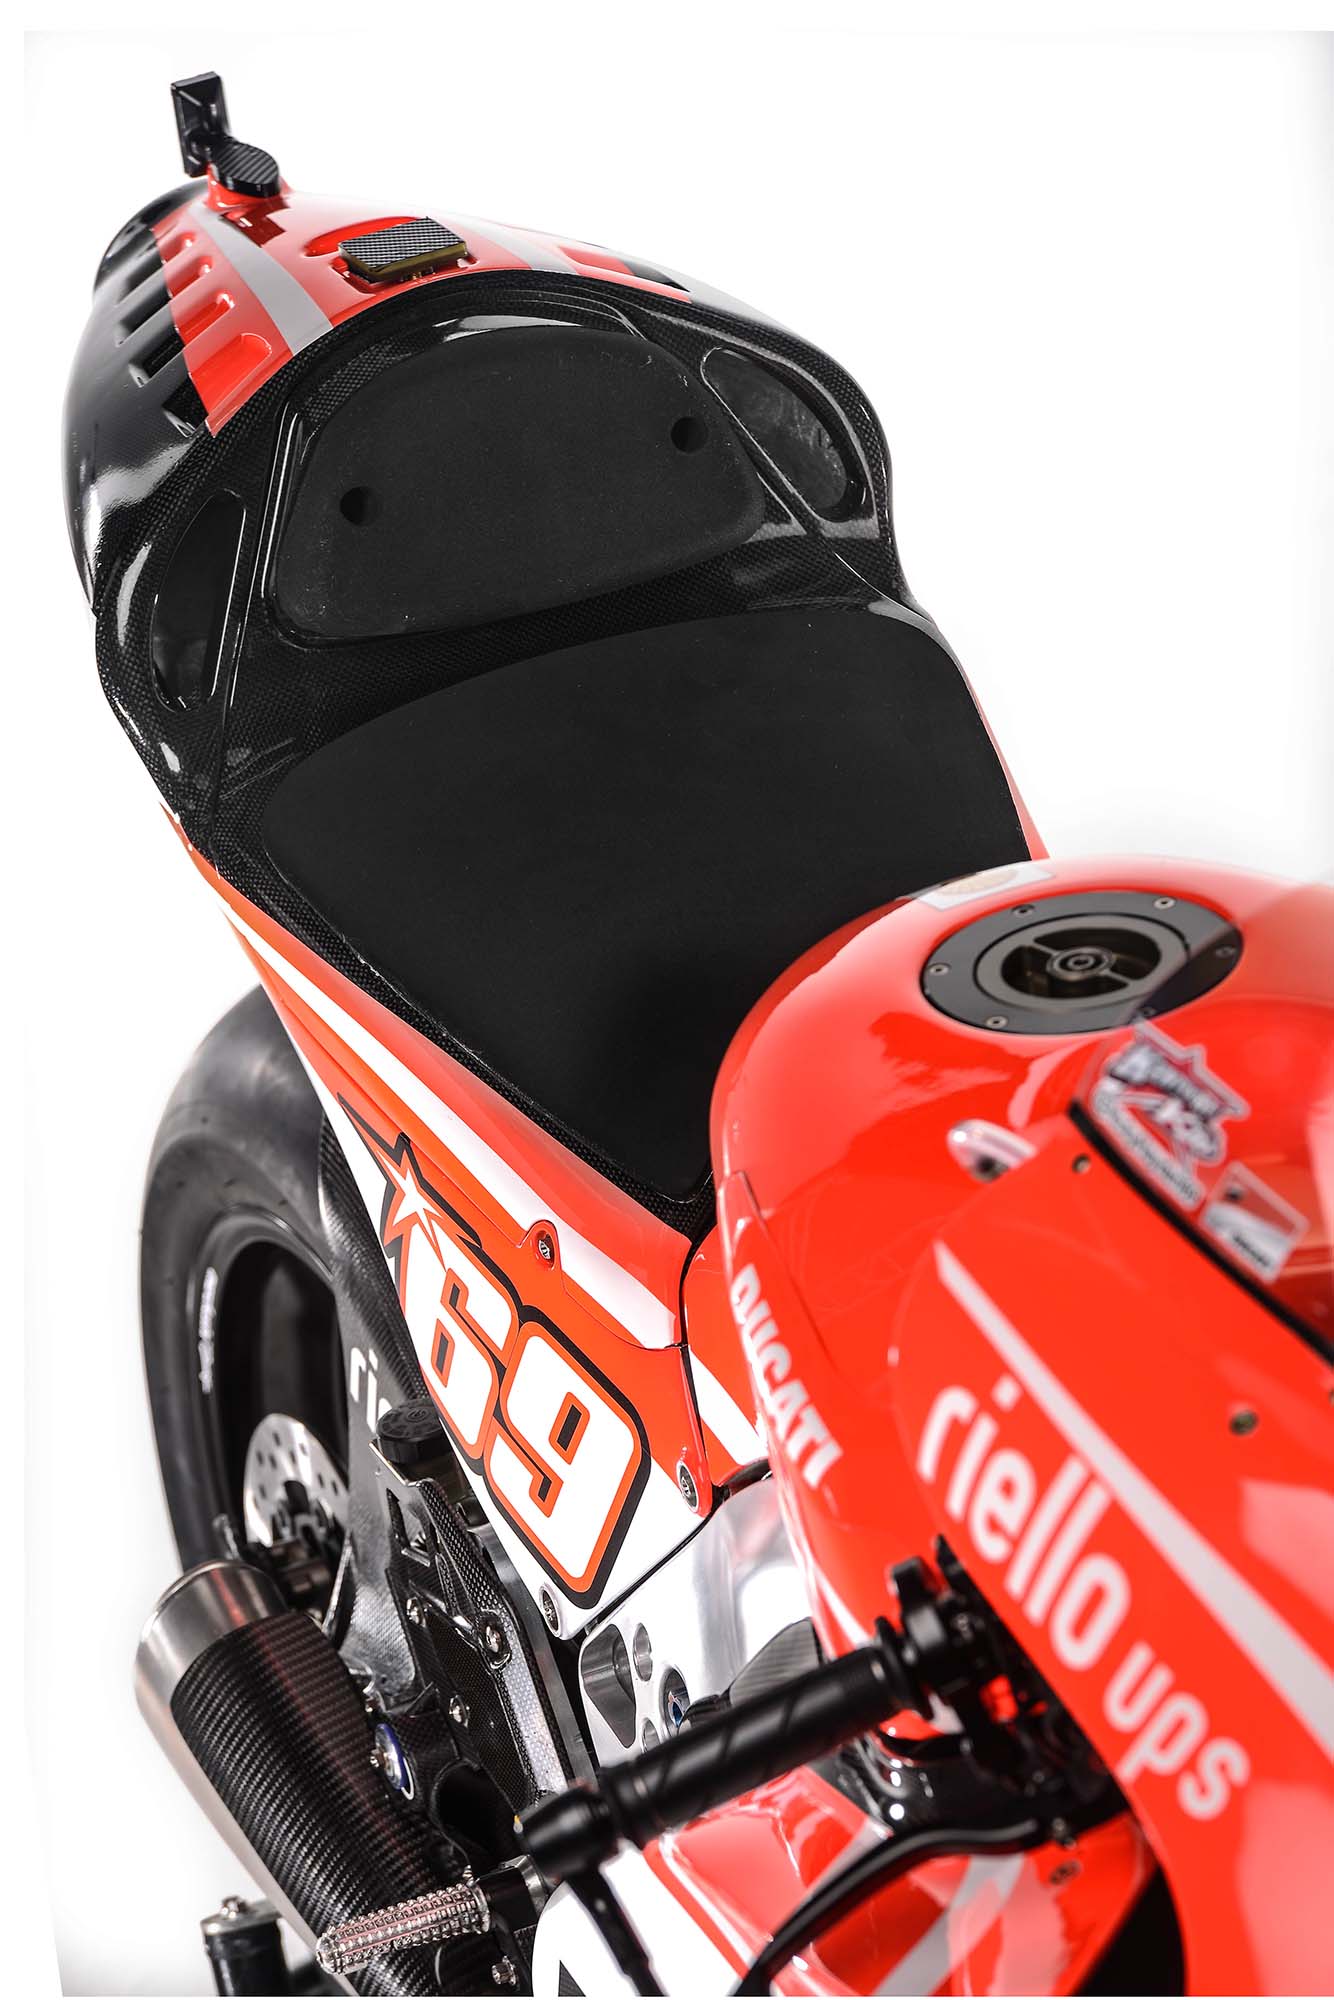 MotoGP, Motor terbaru ducati untuk motoGP 2013: Spesifikasi dan Foto Motor Ducati Desmosedici GP13